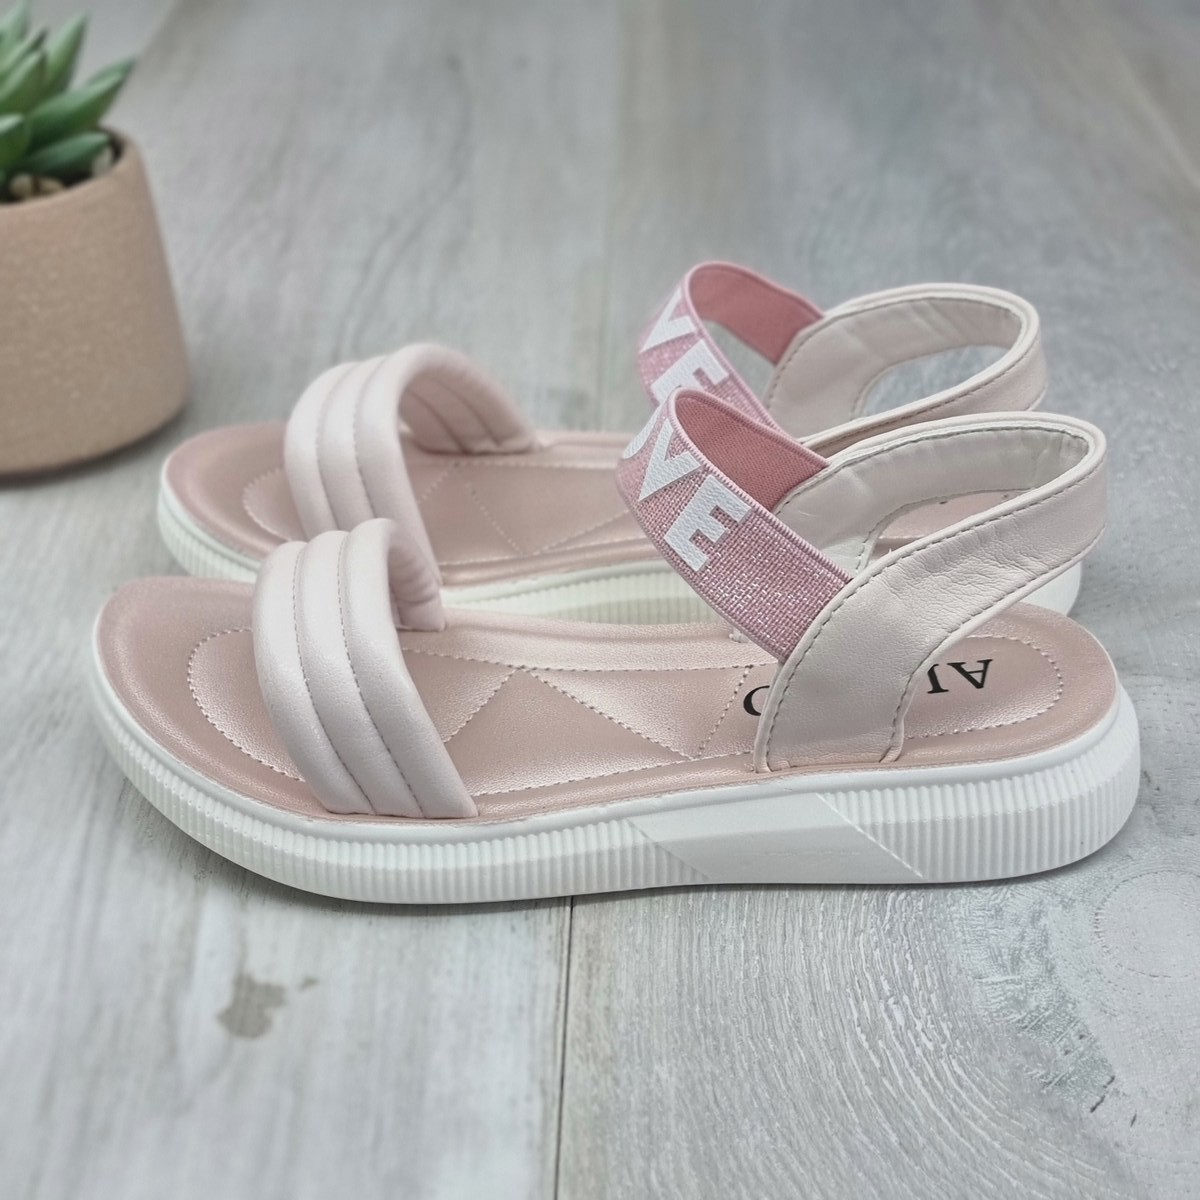 Sandale fata roz cu elastic helen